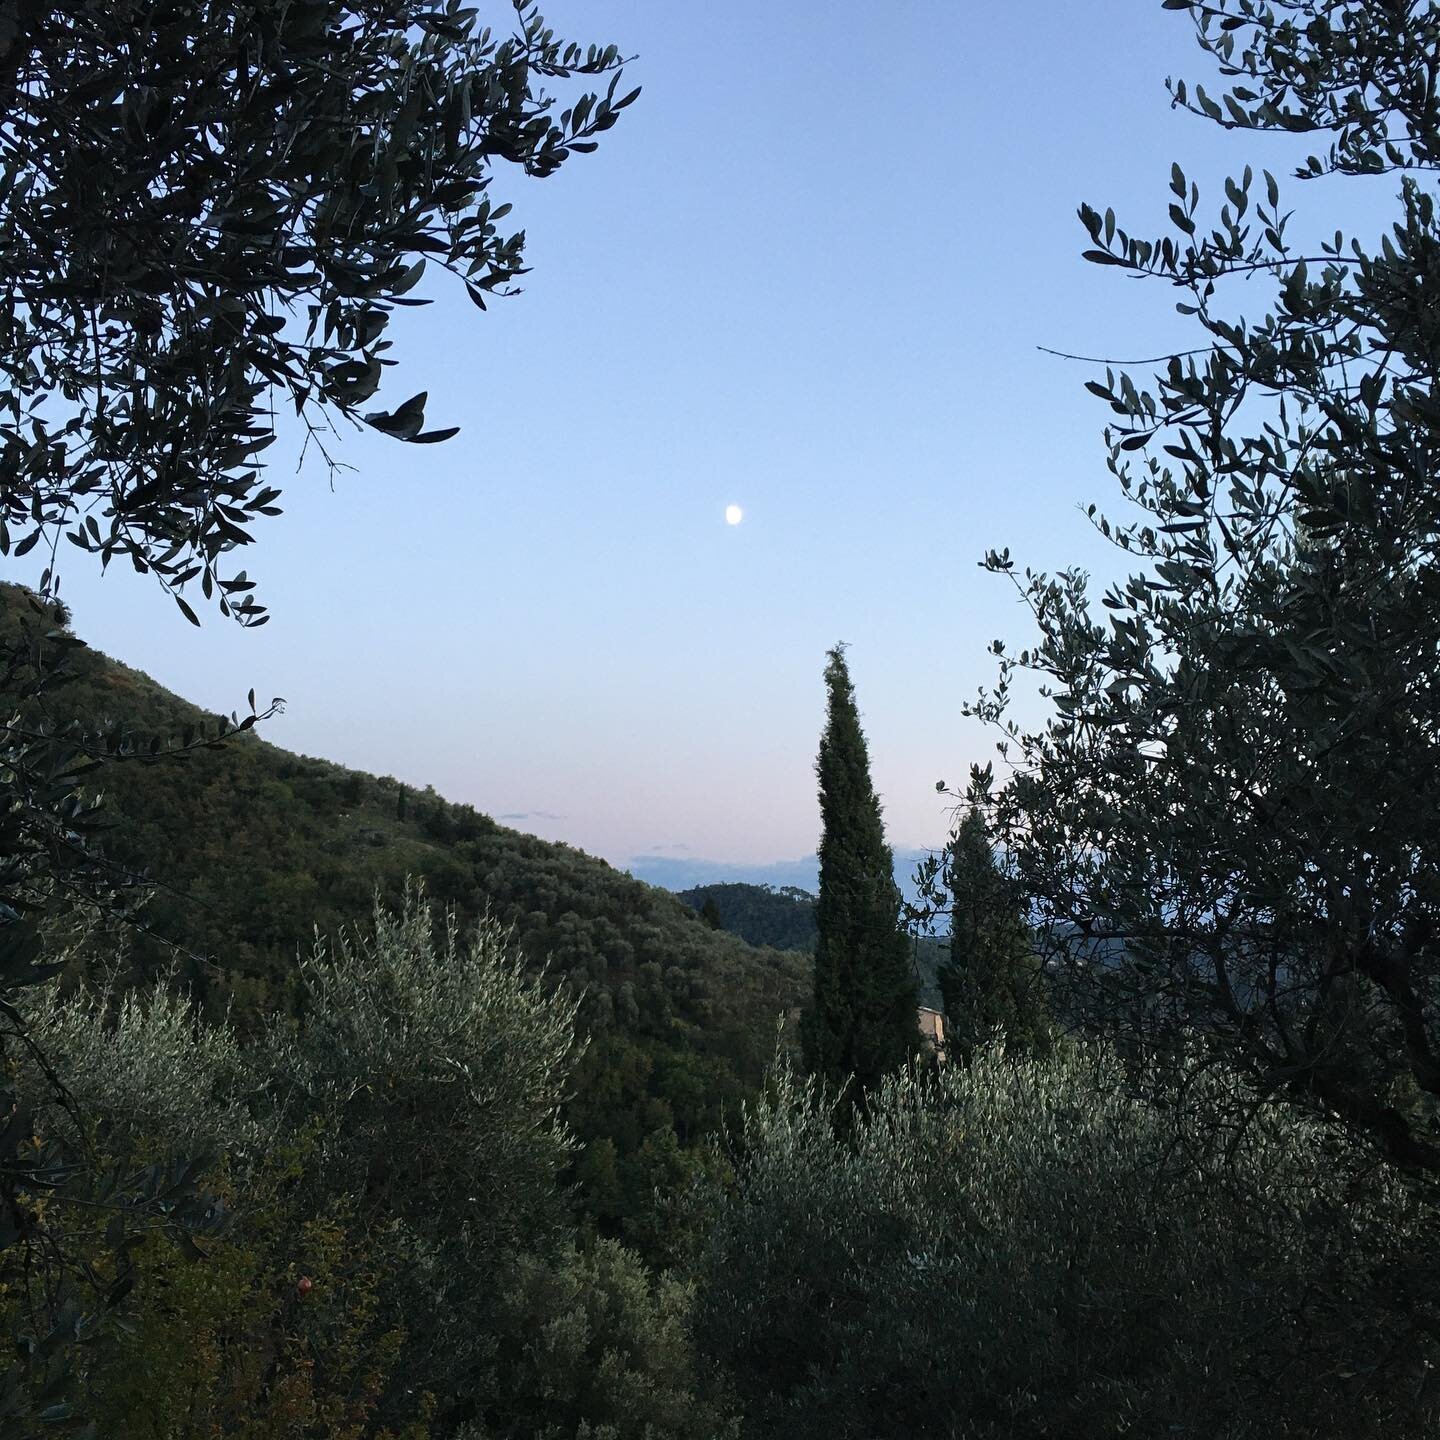 Sister Moon #italy #tuscany #moon #alignednature